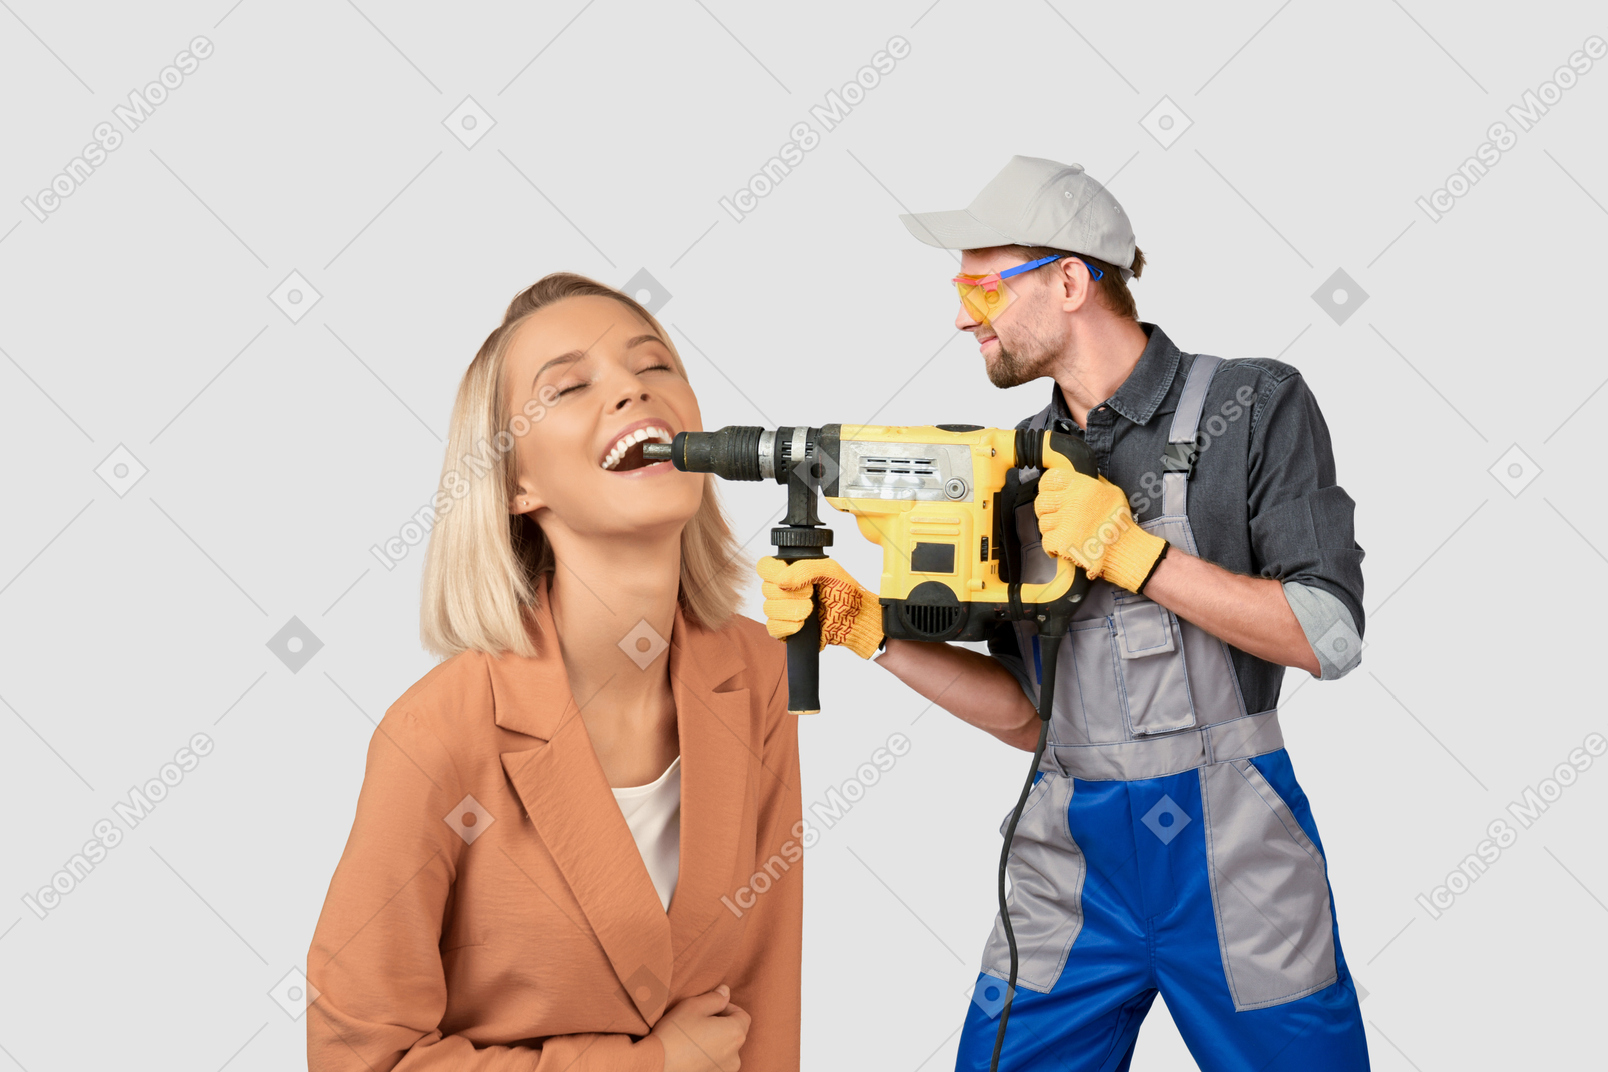 Arbeiter benutzt abbruchhammer auf den zähnen einer frau